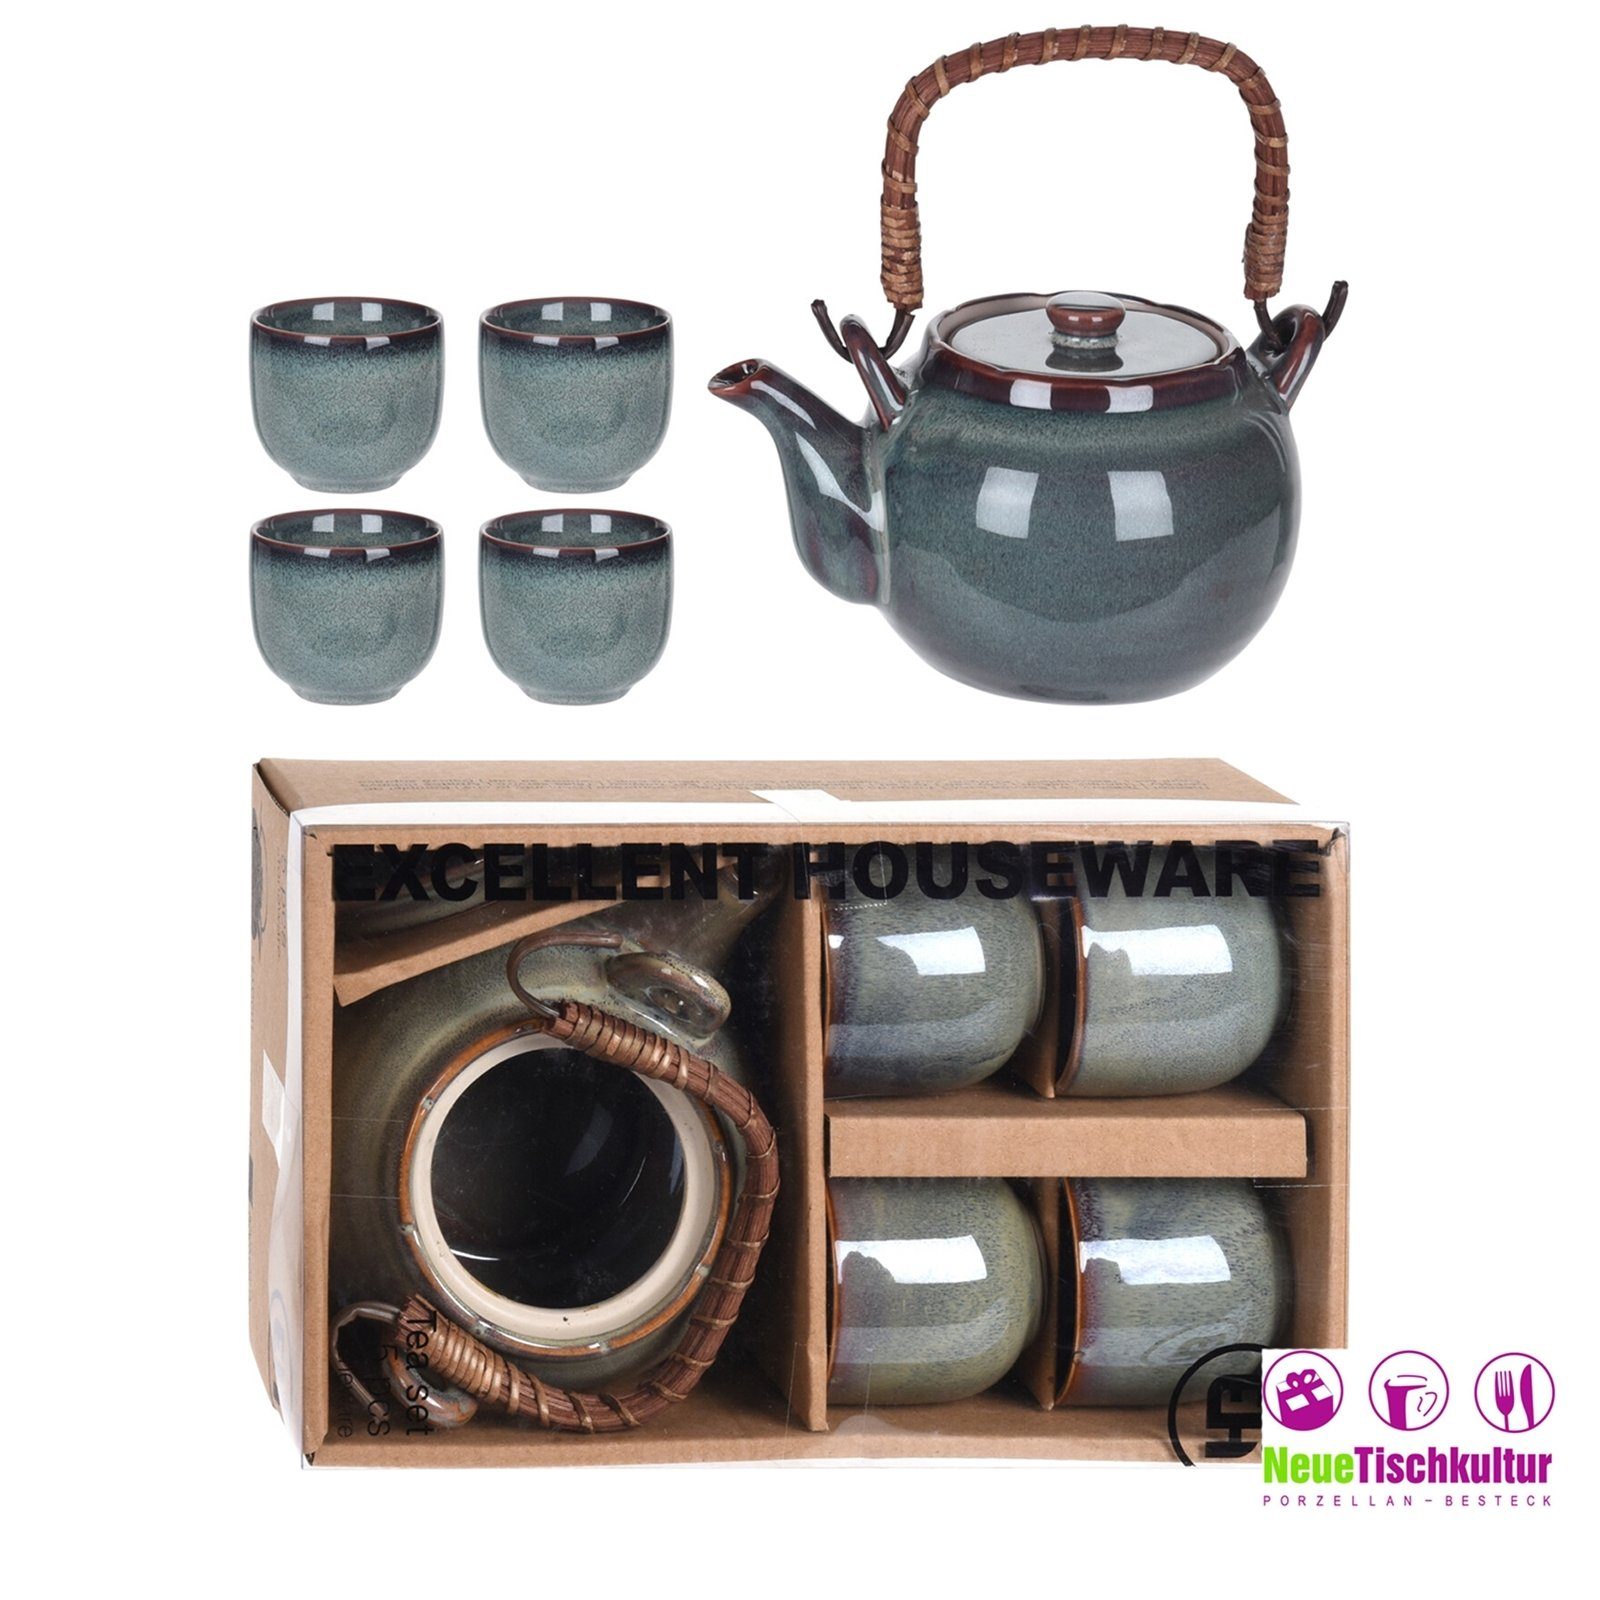 Keramik mit Becher Neuetischkultur Teekanne 4 Teekanne